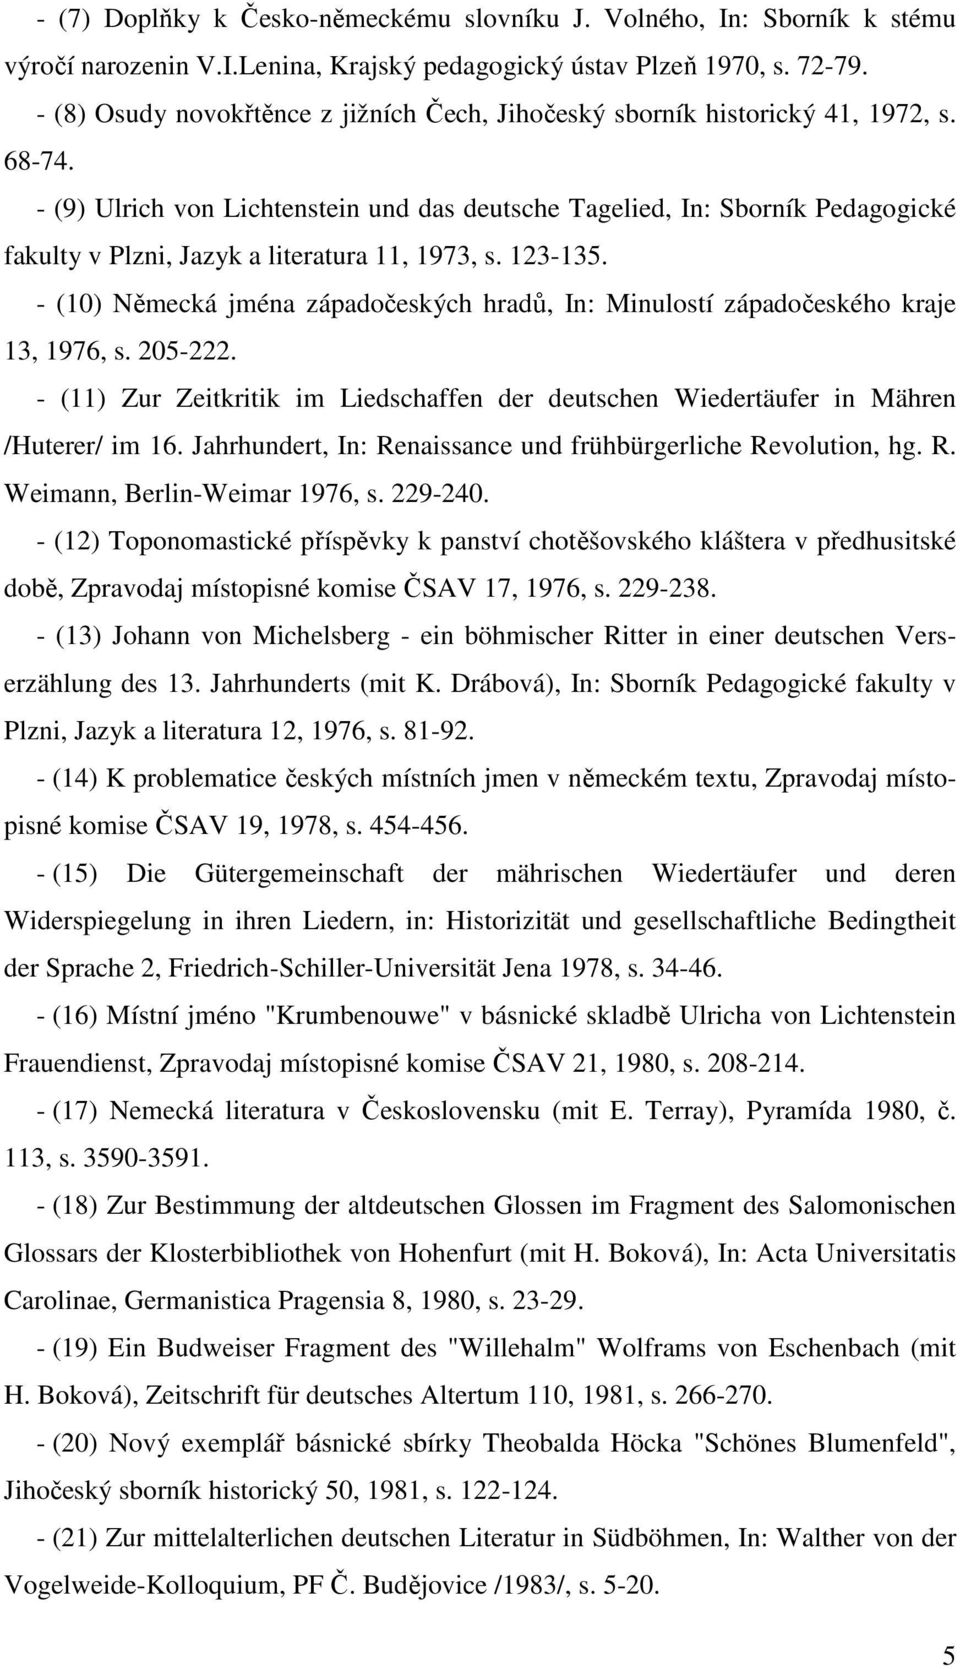 - (9) Ulrich von Lichtenstein und das deutsche Tagelied, In: Sborník Pedagogické fakulty v Plzni, Jazyk a literatura 11, 1973, s. 123-135.